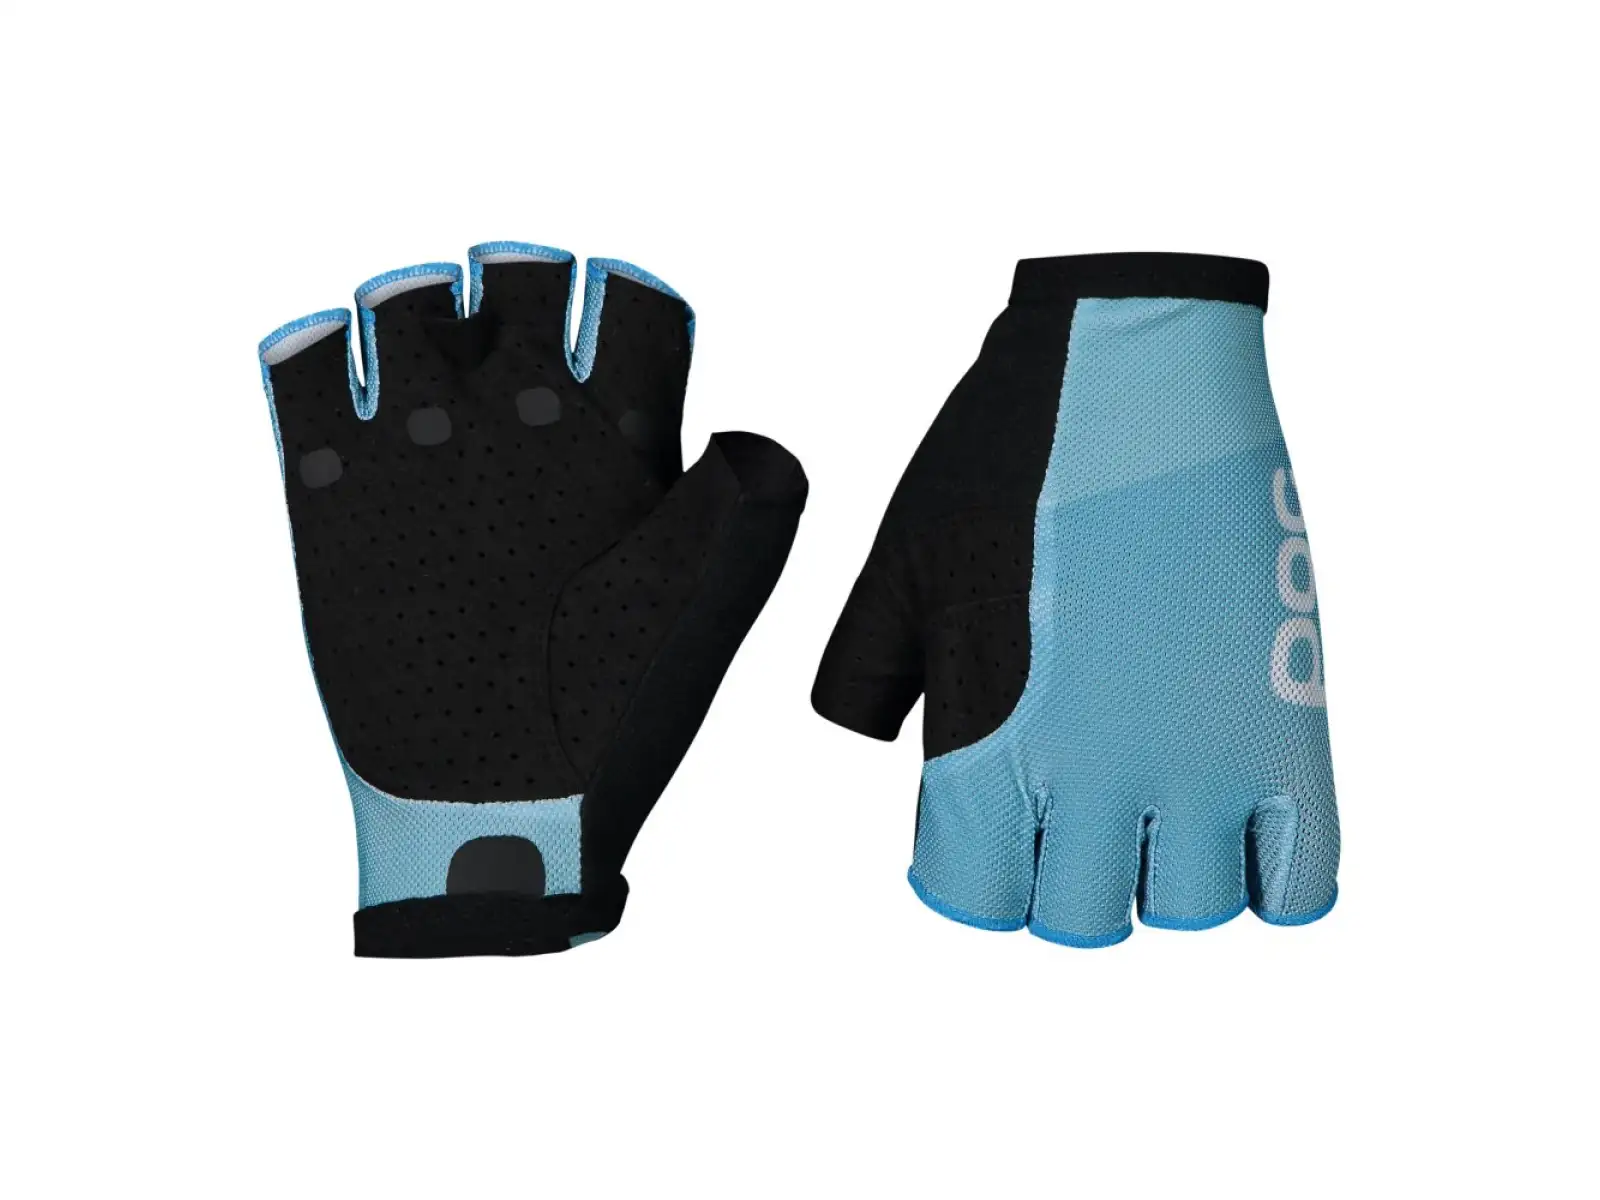 POC Essential Road Mesh krátké rukavice Basalt Blue/Basalt Blue